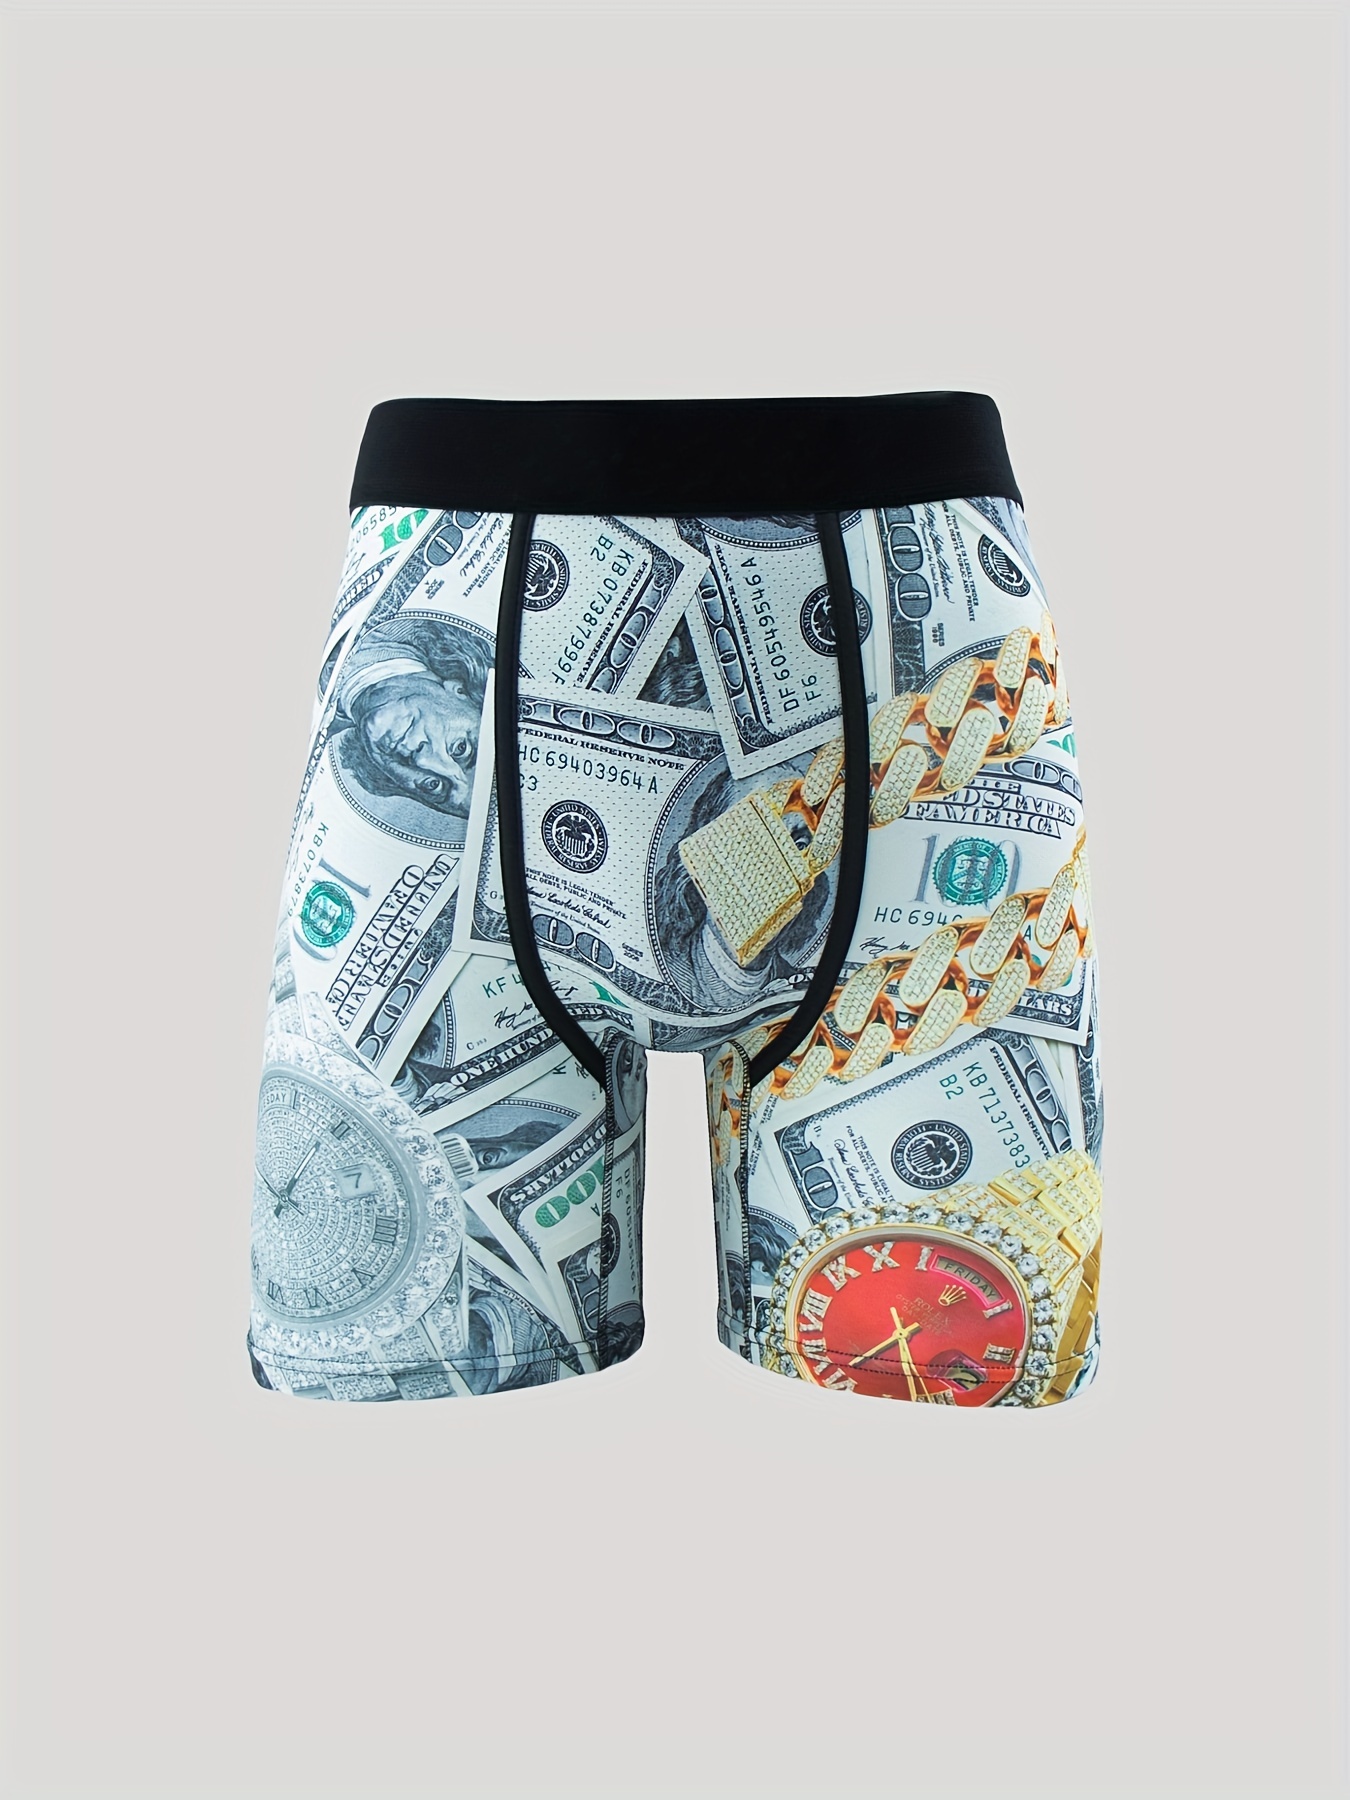 PSD Underwear Boxer Briefs - Money Shot